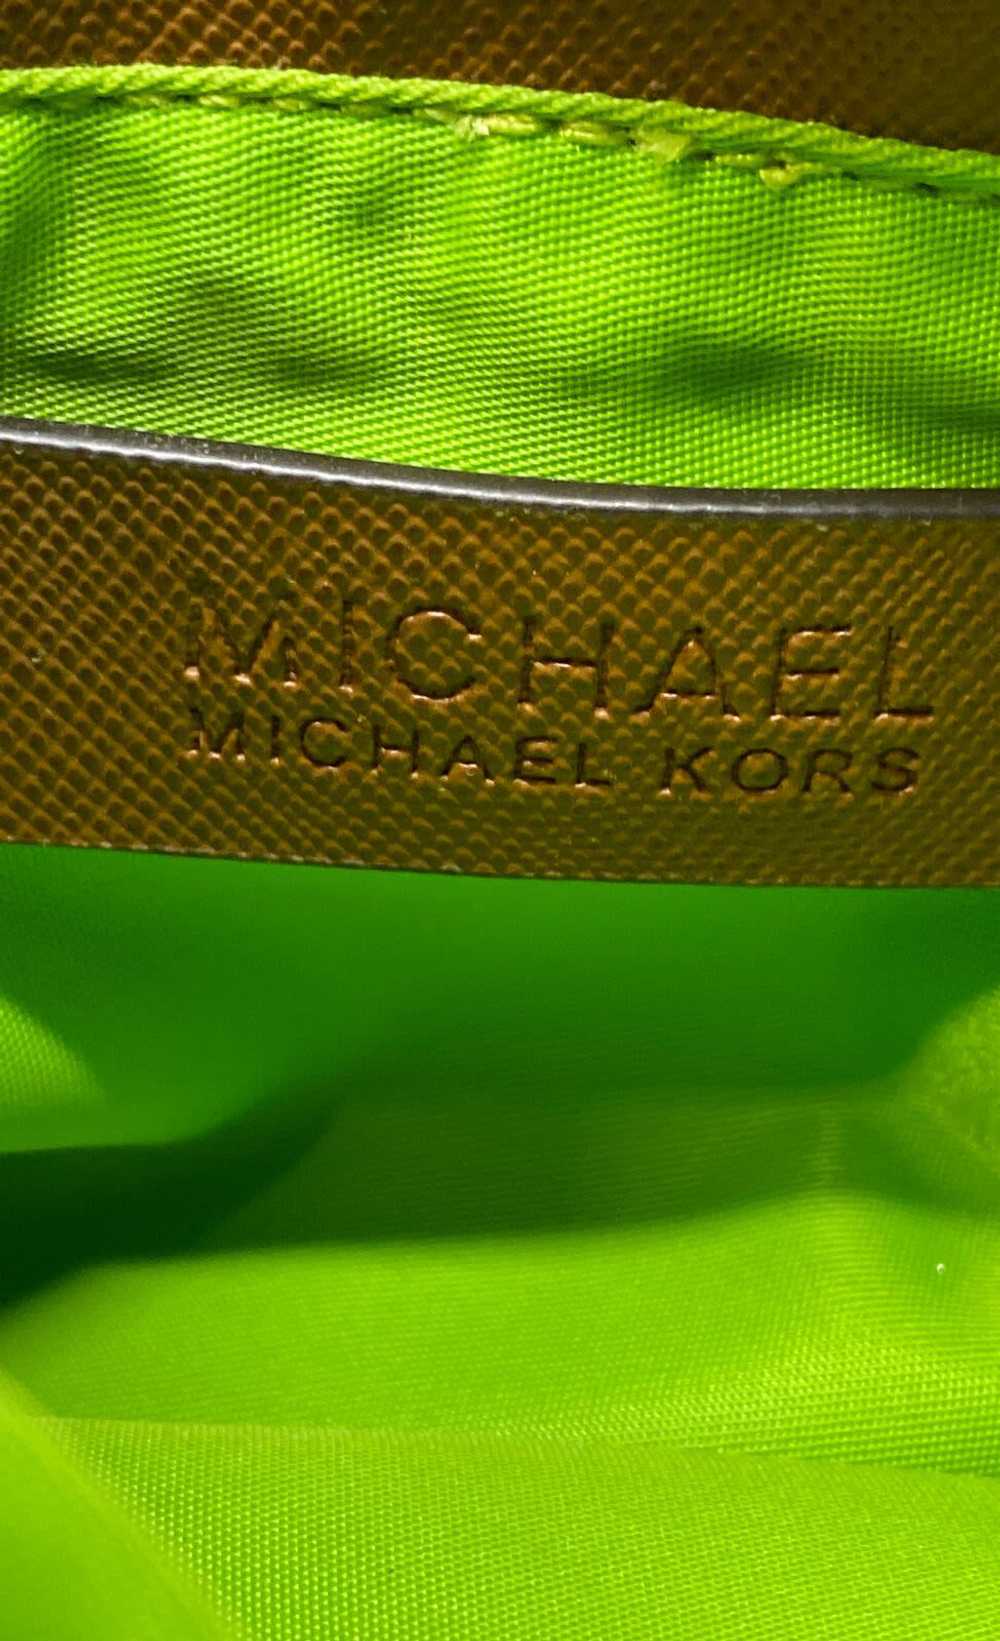 Michael Kors Saddle Bag - image 5